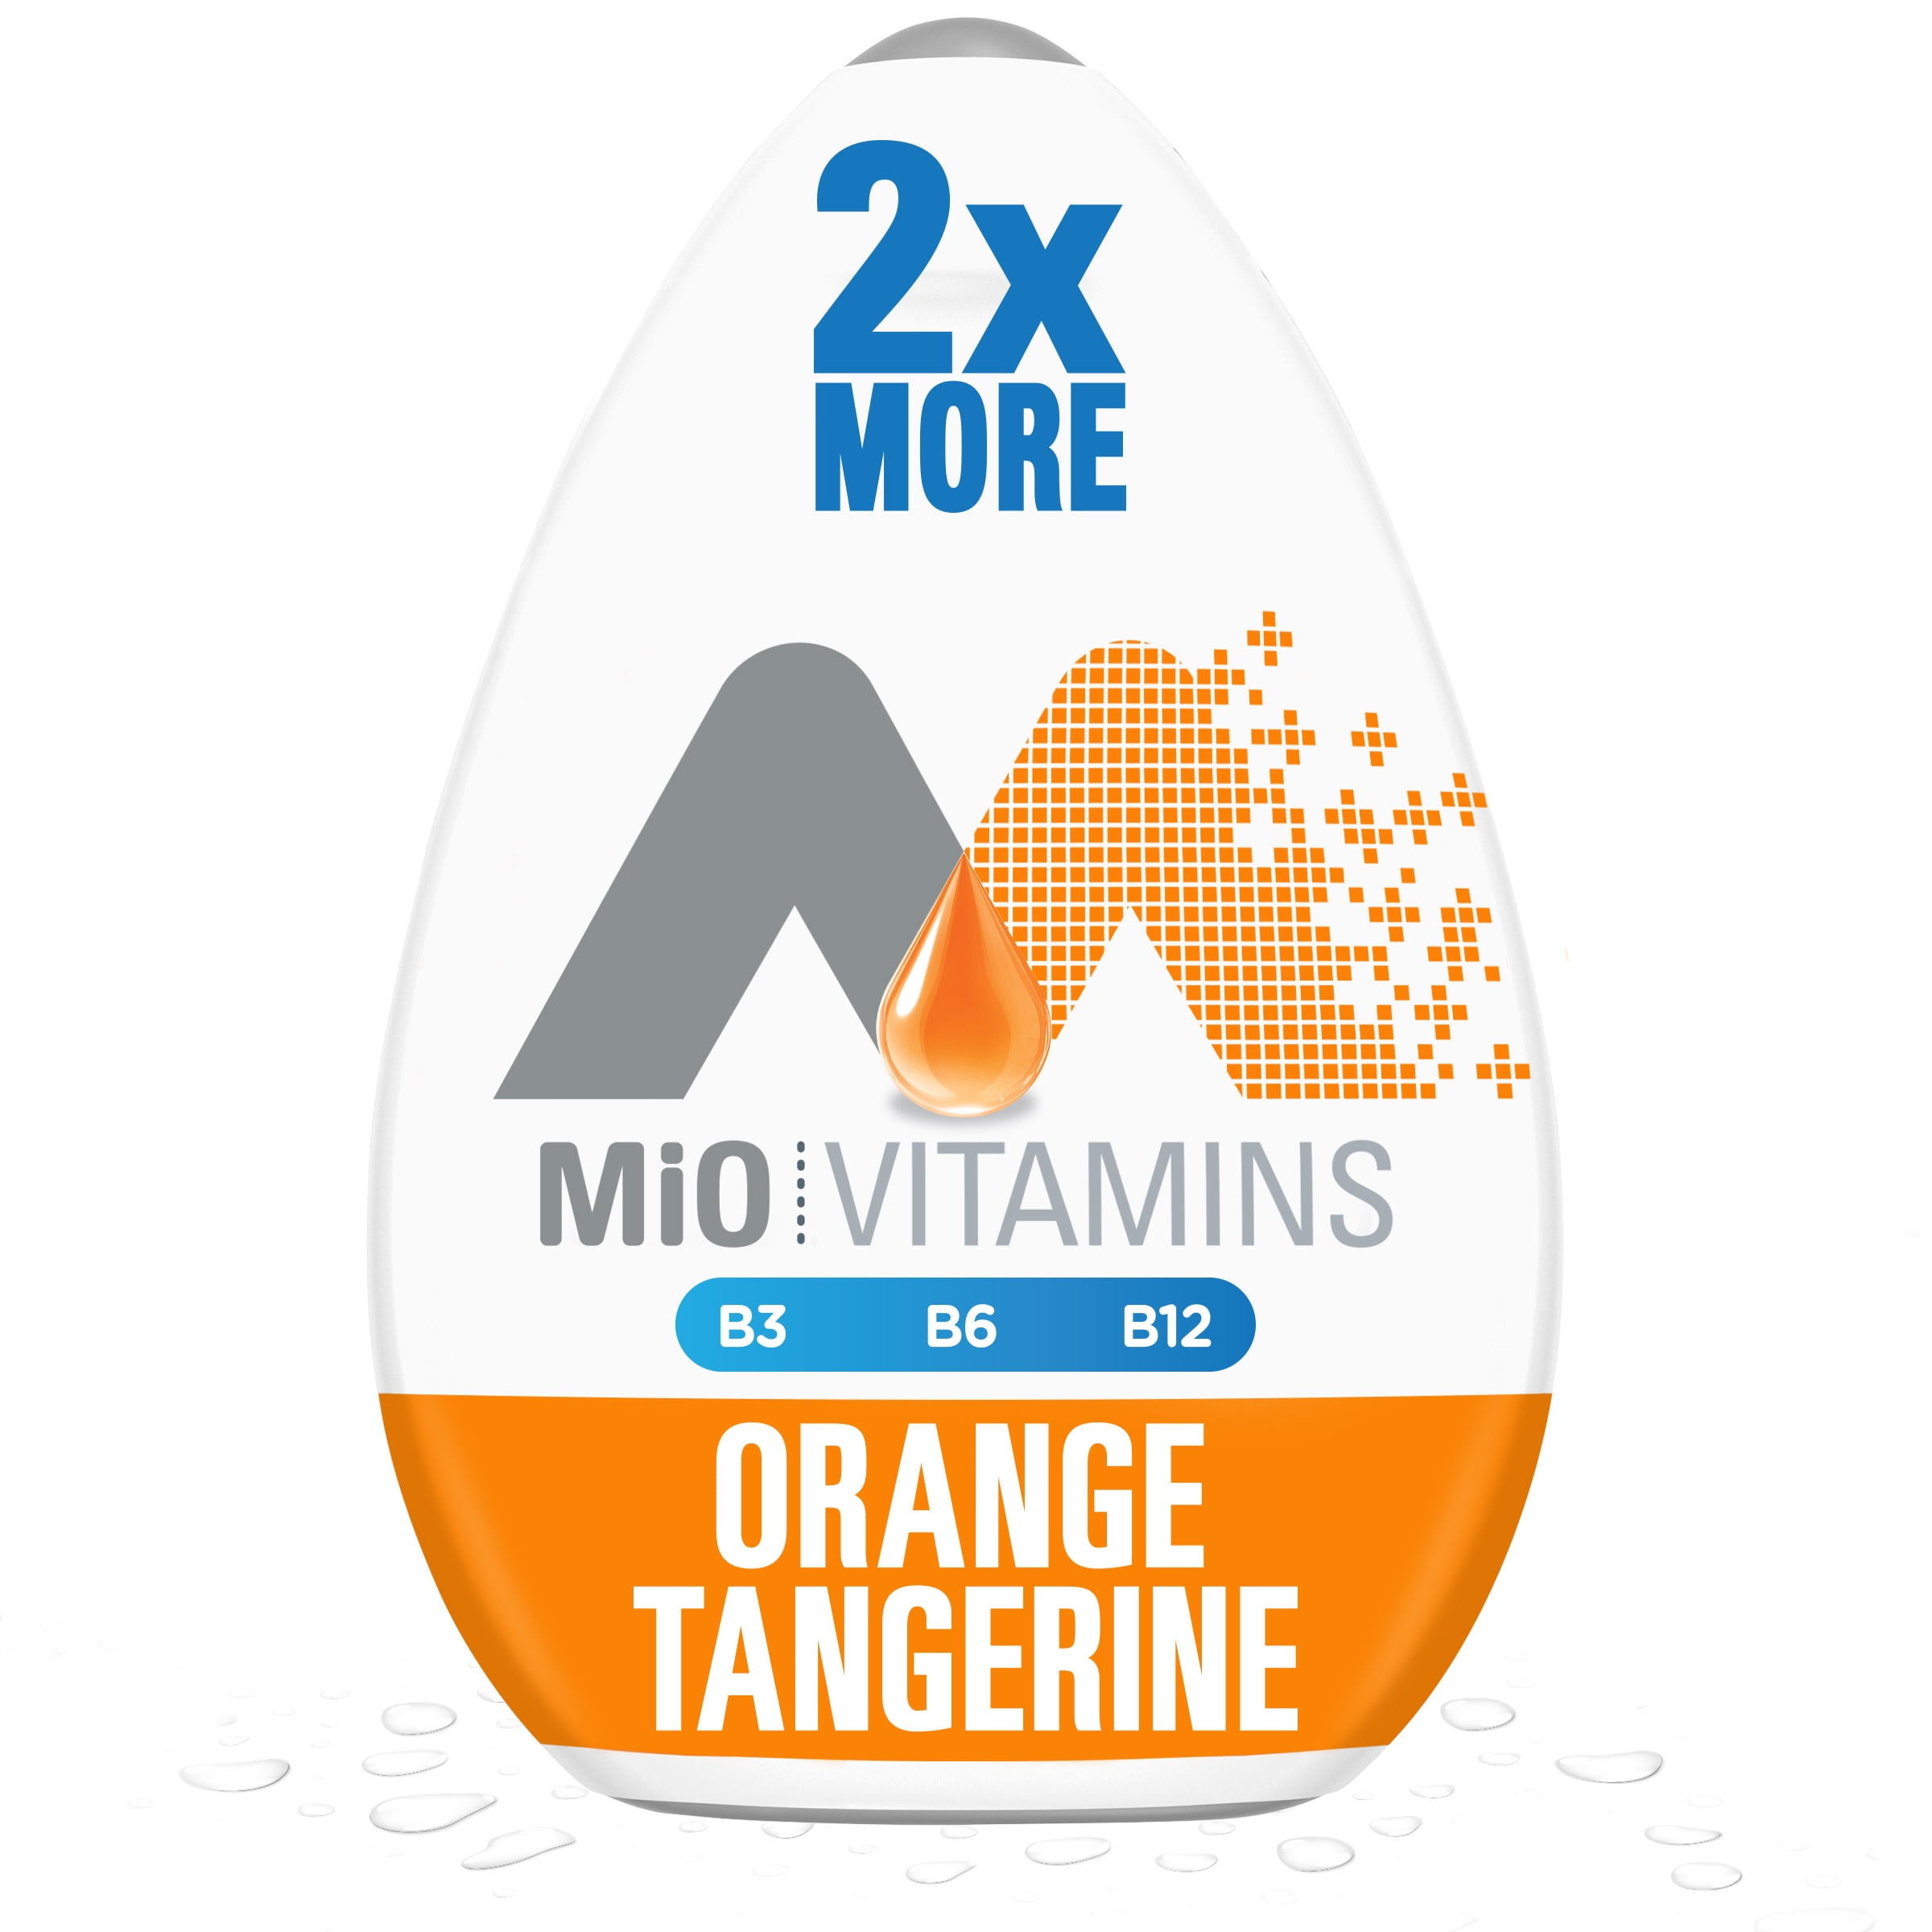 MiO Vitamins Orange Tangerine Sugar Free Water Enhancer with 2X More, 3.24 fl oz Big Bottle